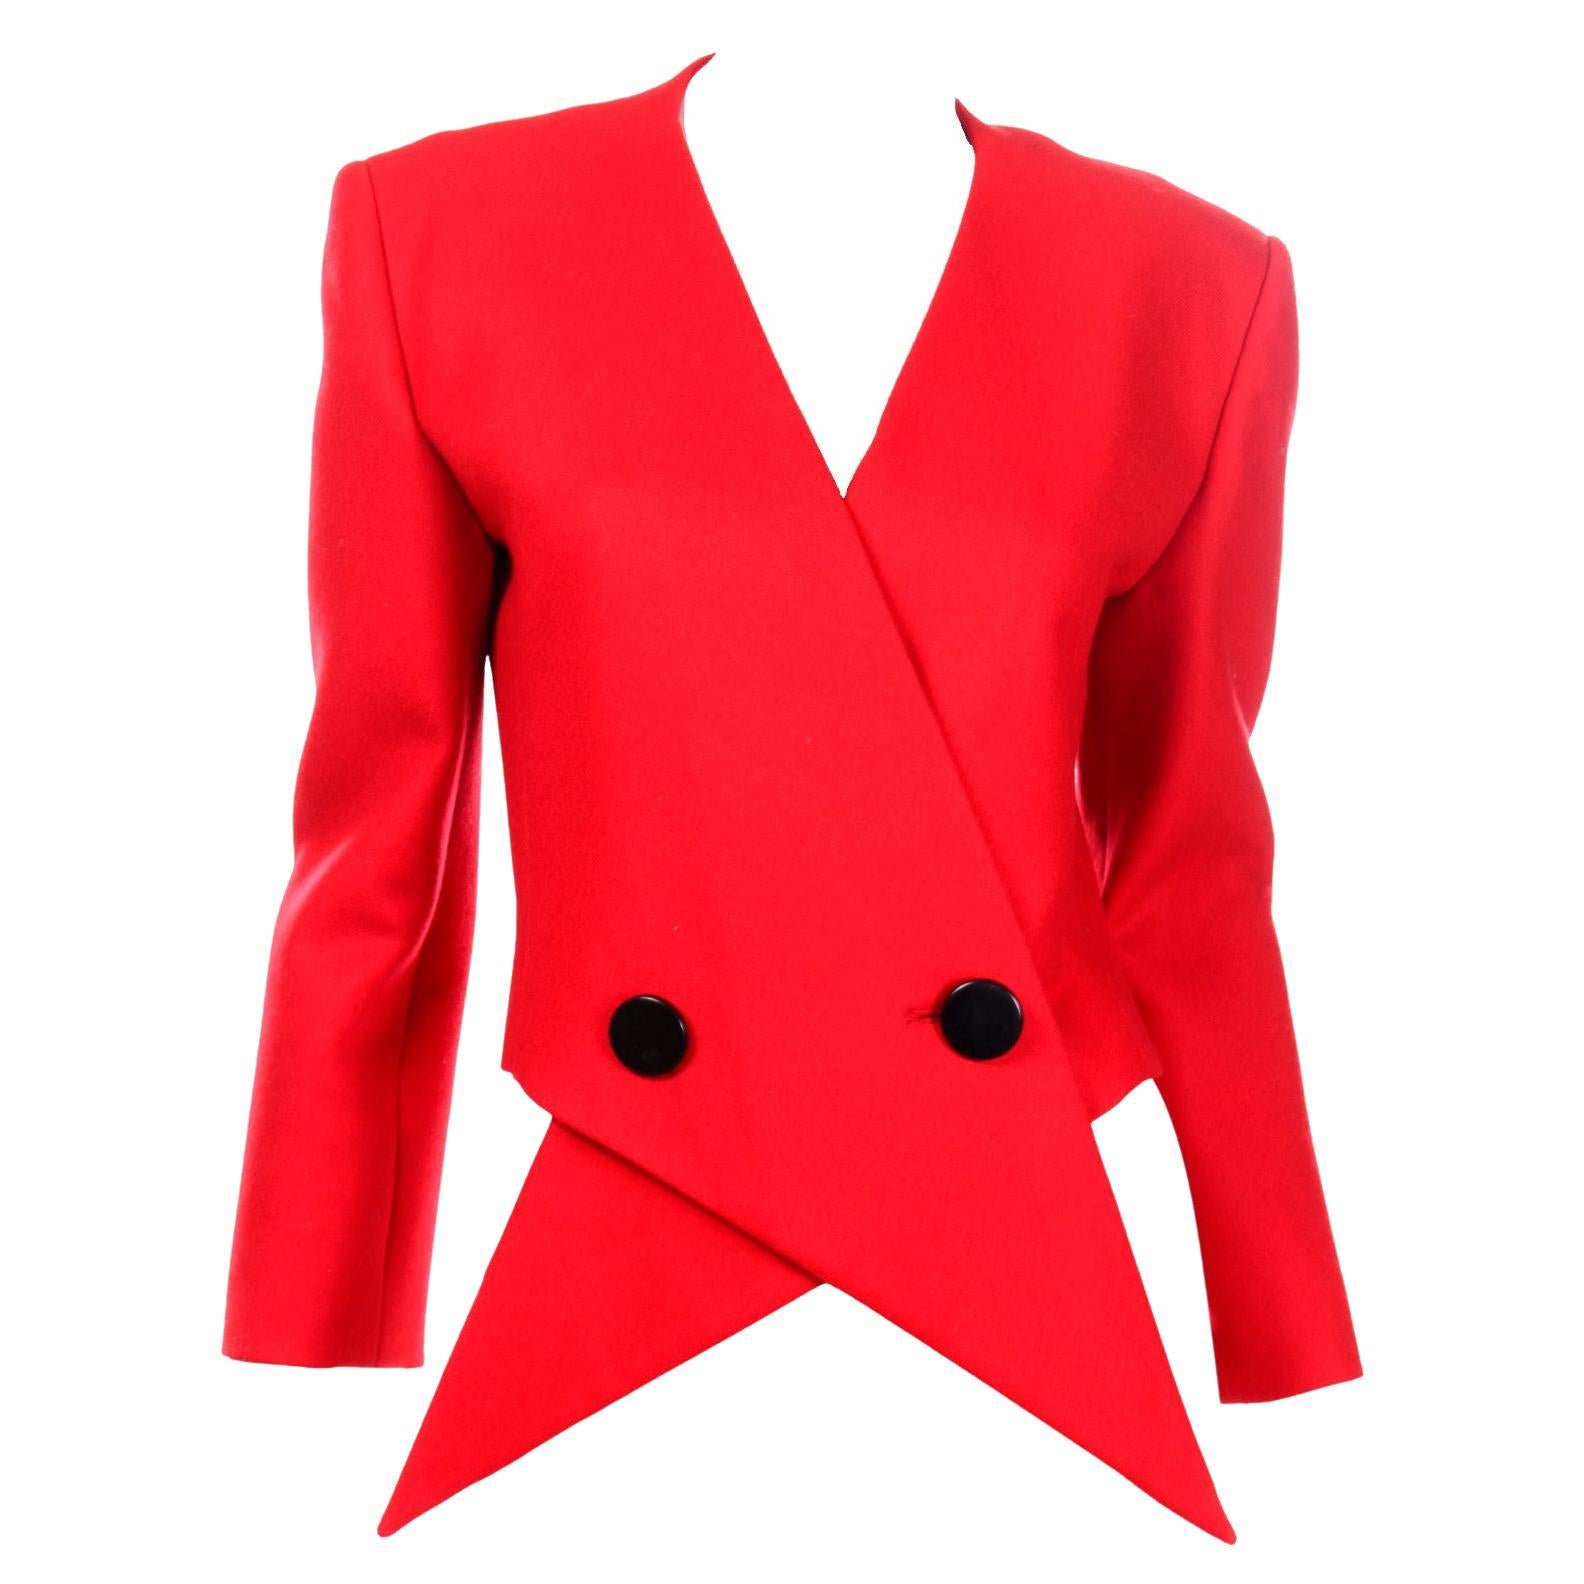 Pierre Cardin Red Vintage Avant Garde Jacket